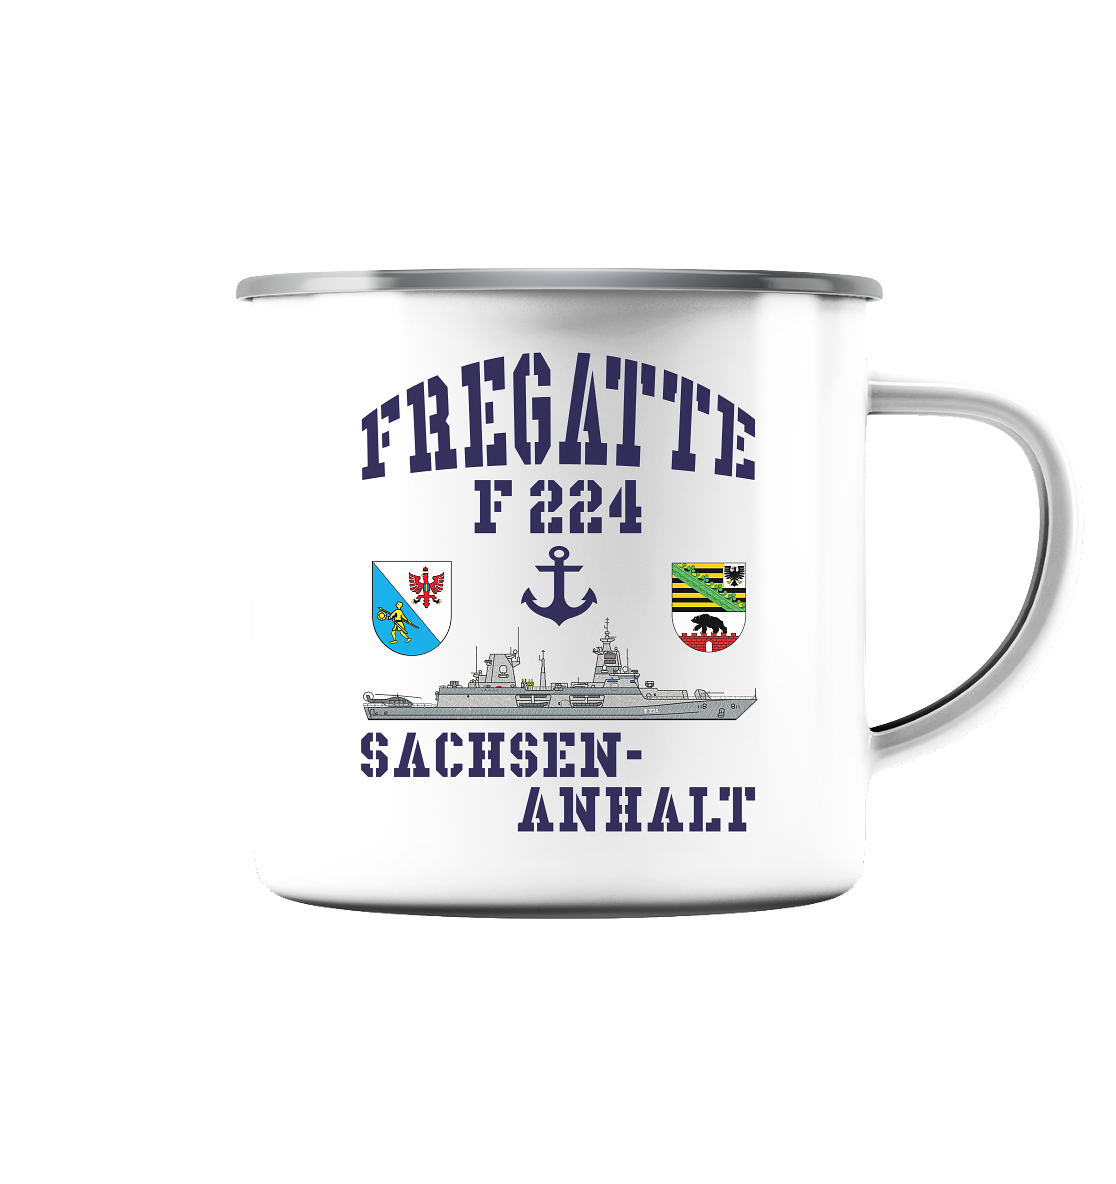 Fregatte F224 SACHSEN-ANHALT Anker - Emaille Tasse (Silber)